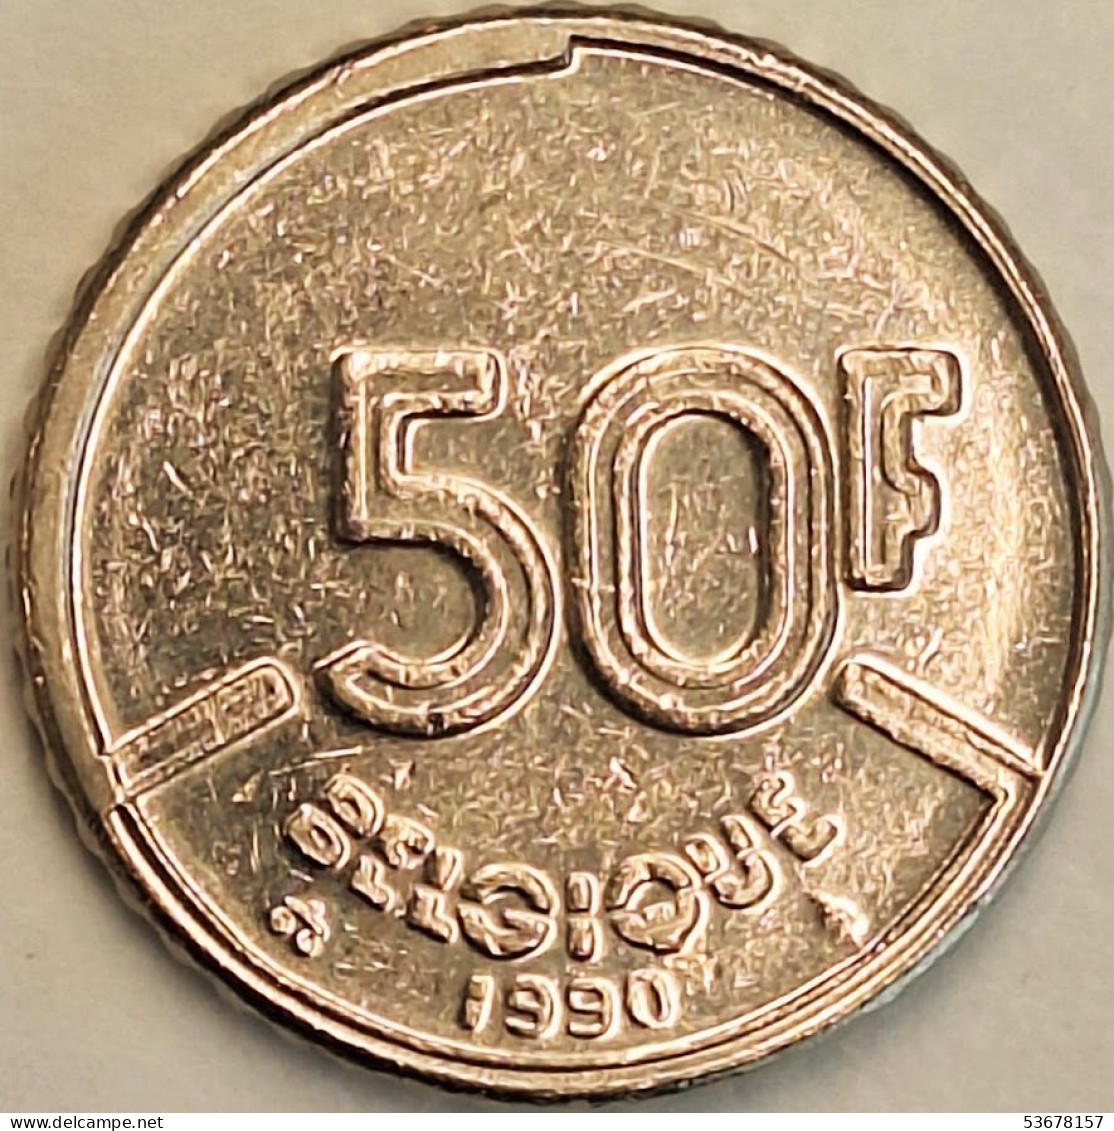 Belgium - 50 Francs 1990, KM# 168 (#3209) - 50 Francs